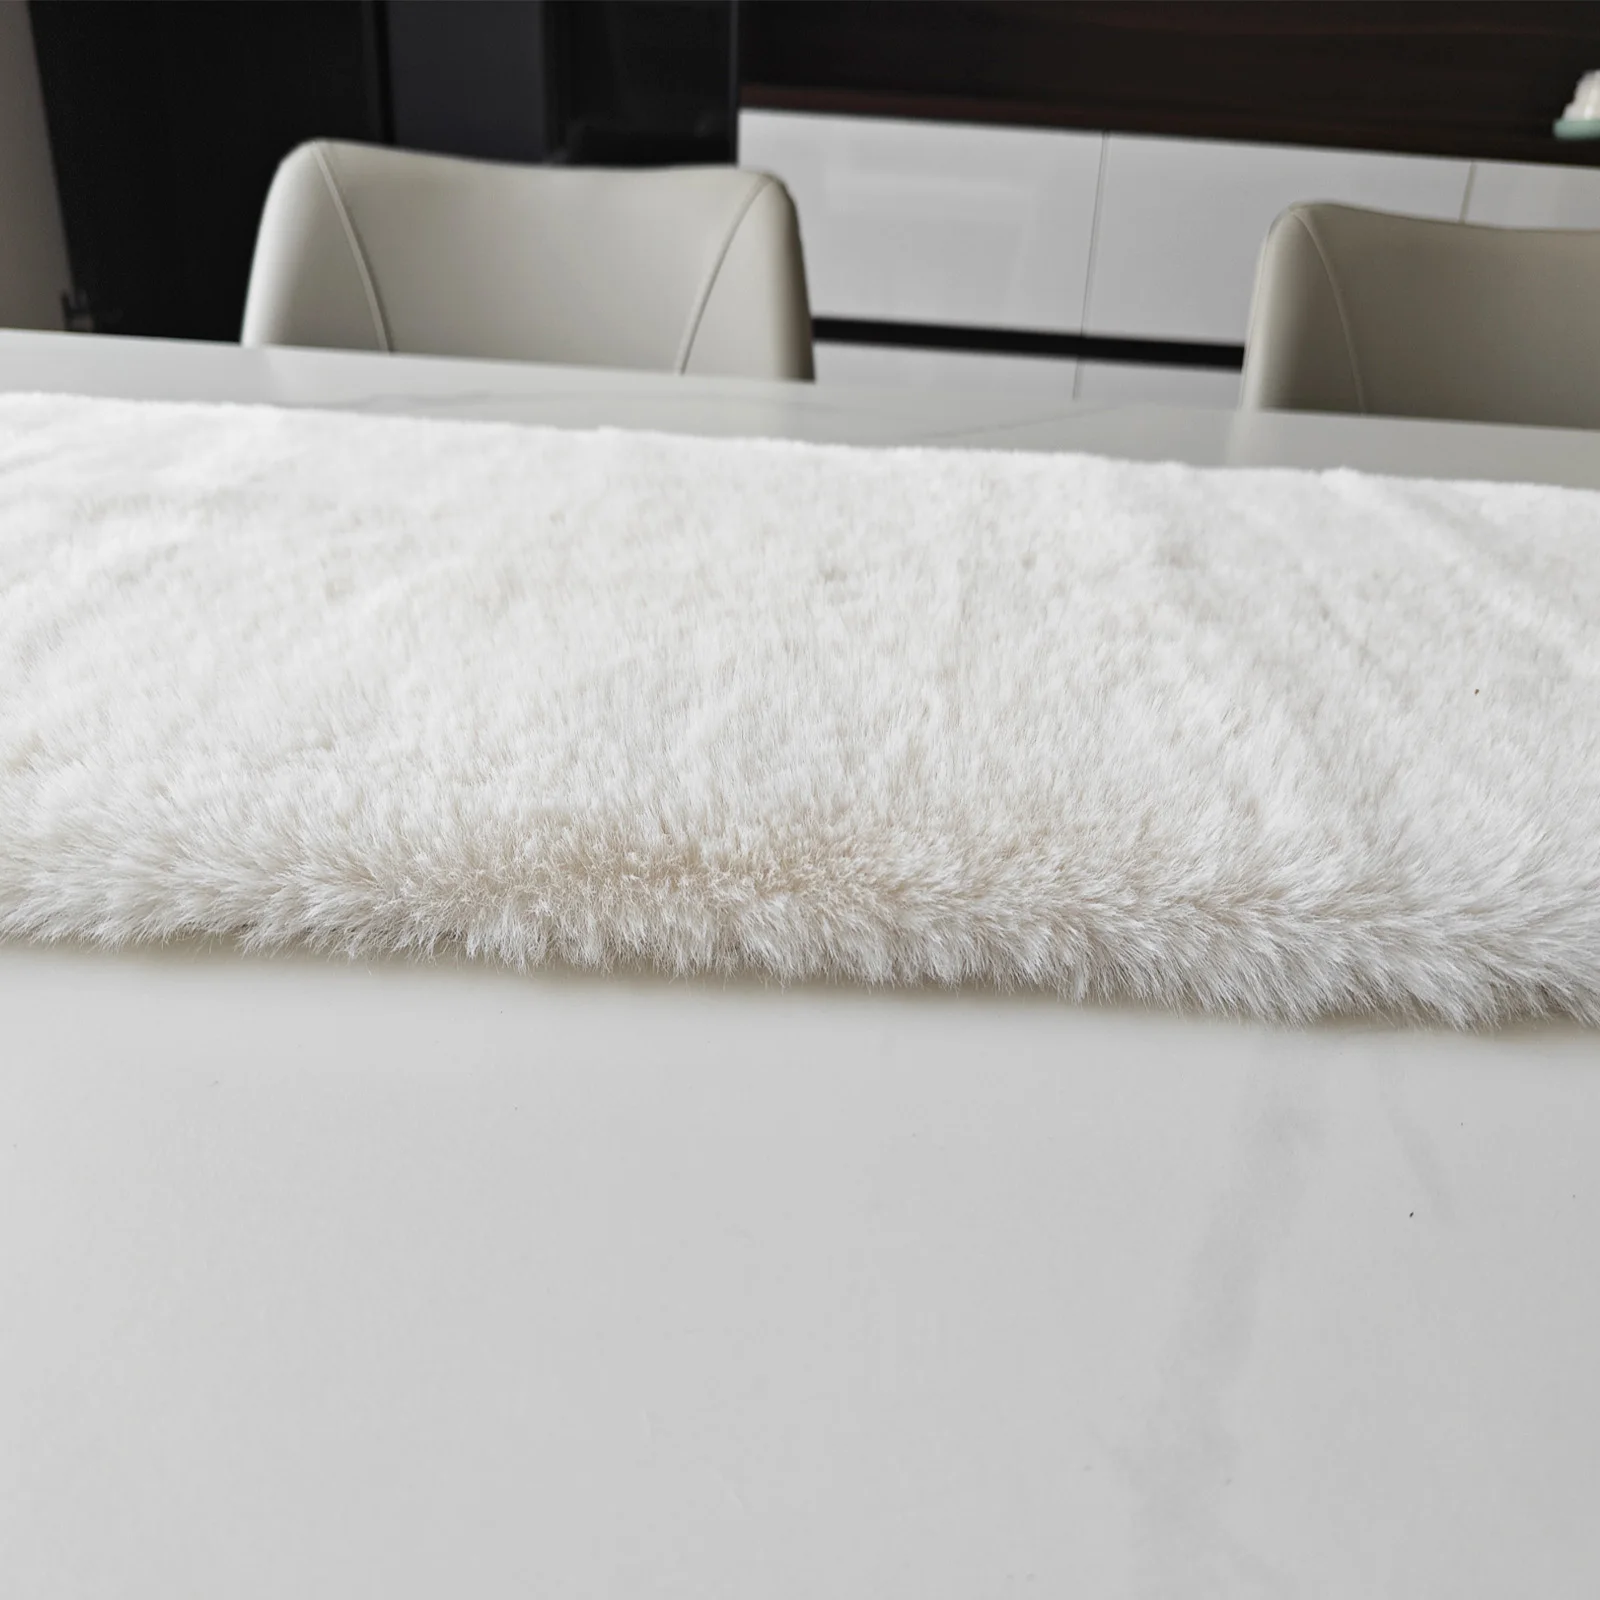 Table Runner for Bedroom White Fur Christmas Table Runner for Dresser Cover  Top for Table Bed - AliExpress